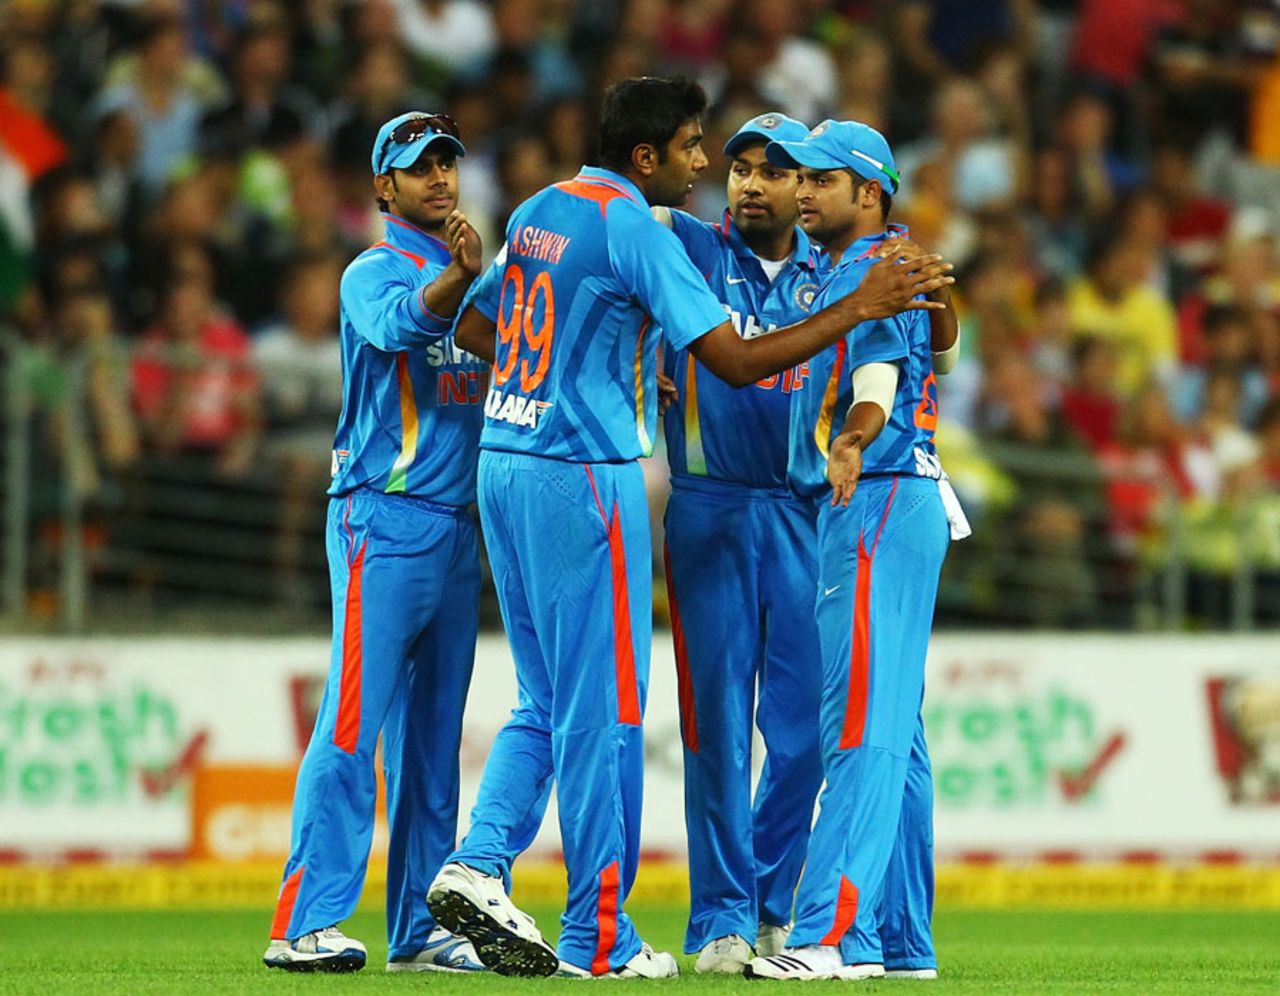 R Ashwin got rid of Travis Birt, Australia v India, 1st Twenty20, Stadium Australia, Sydney, February 1, 2012